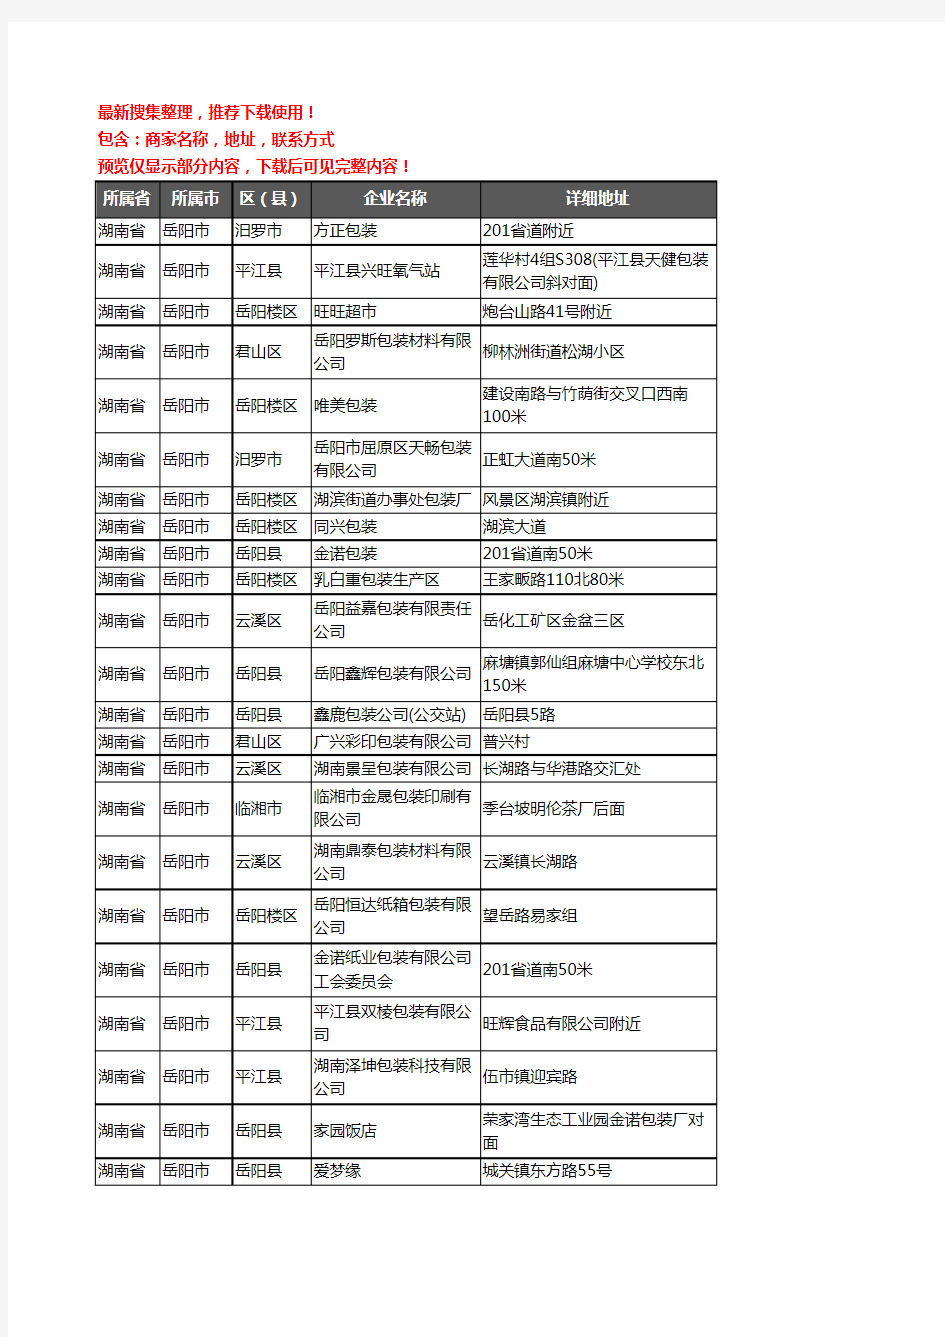 新版湖南省岳阳市包装企业公司商家户名录单联系方式地址大全96家